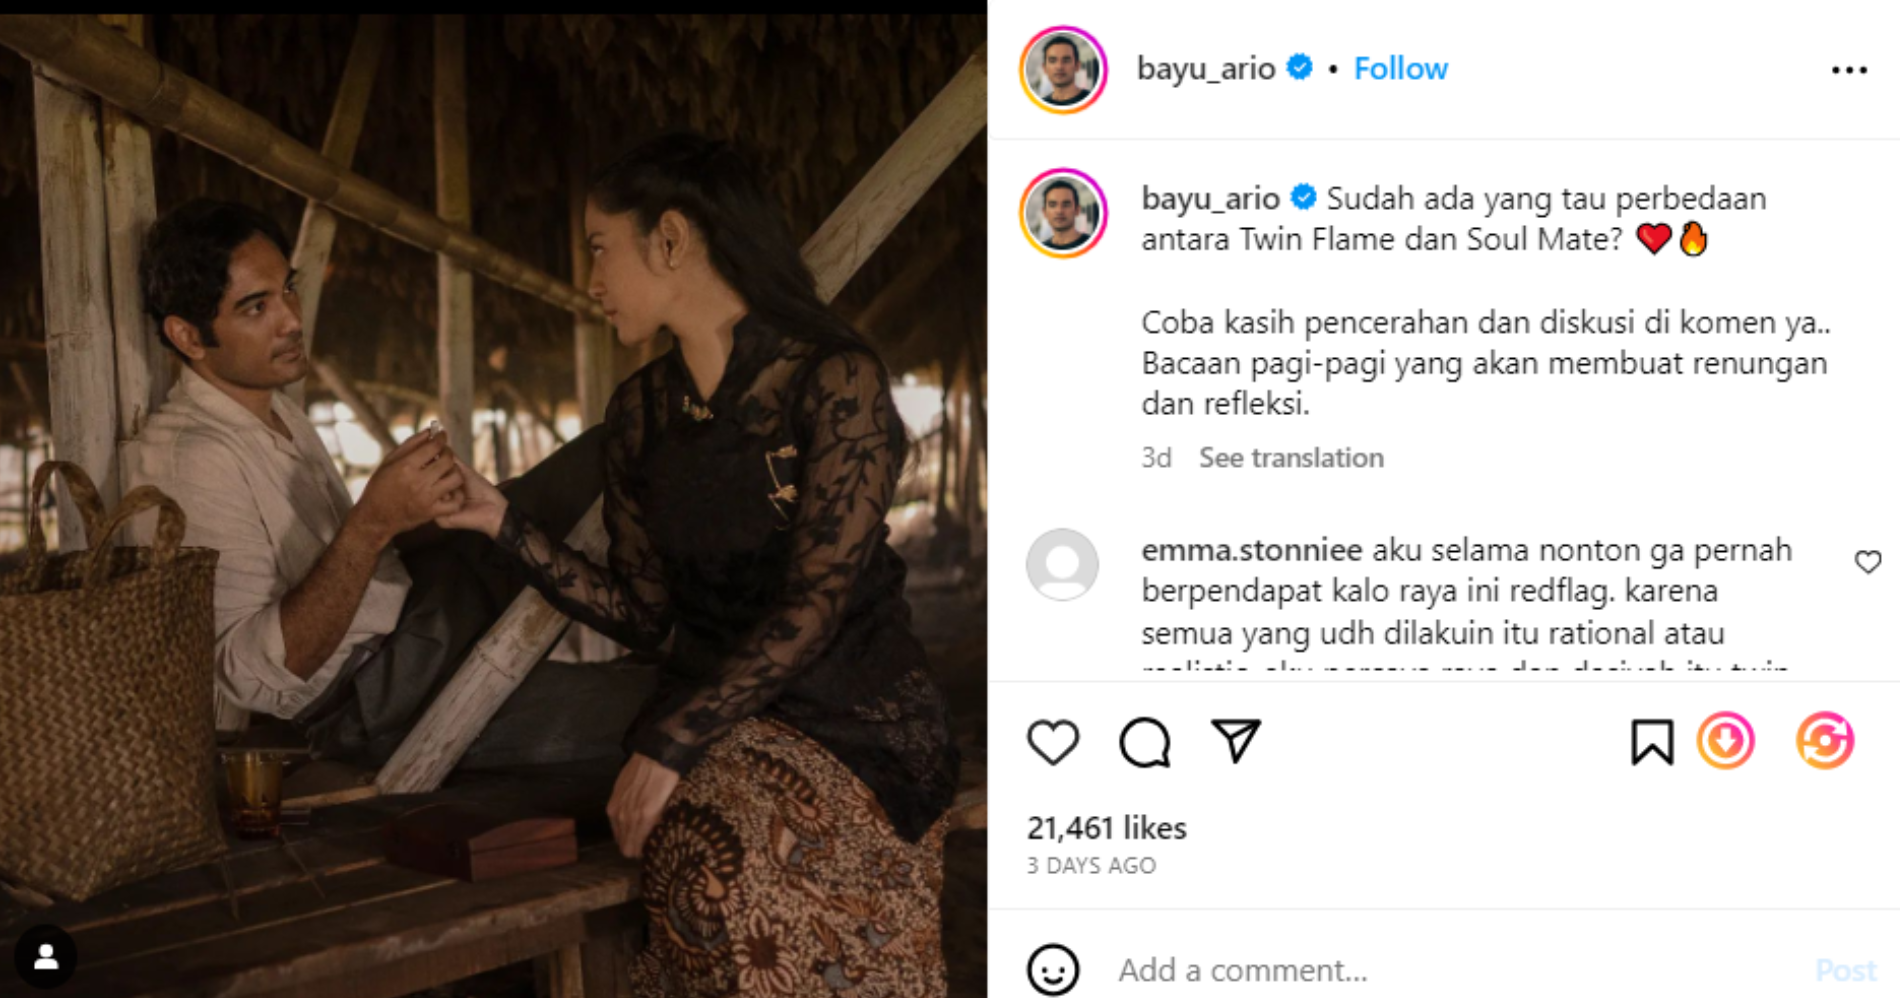 Ario Bayu Mempertanyakan Twin Flame dan Soulmate di IGnya - Image: Instagram @bayu_ario